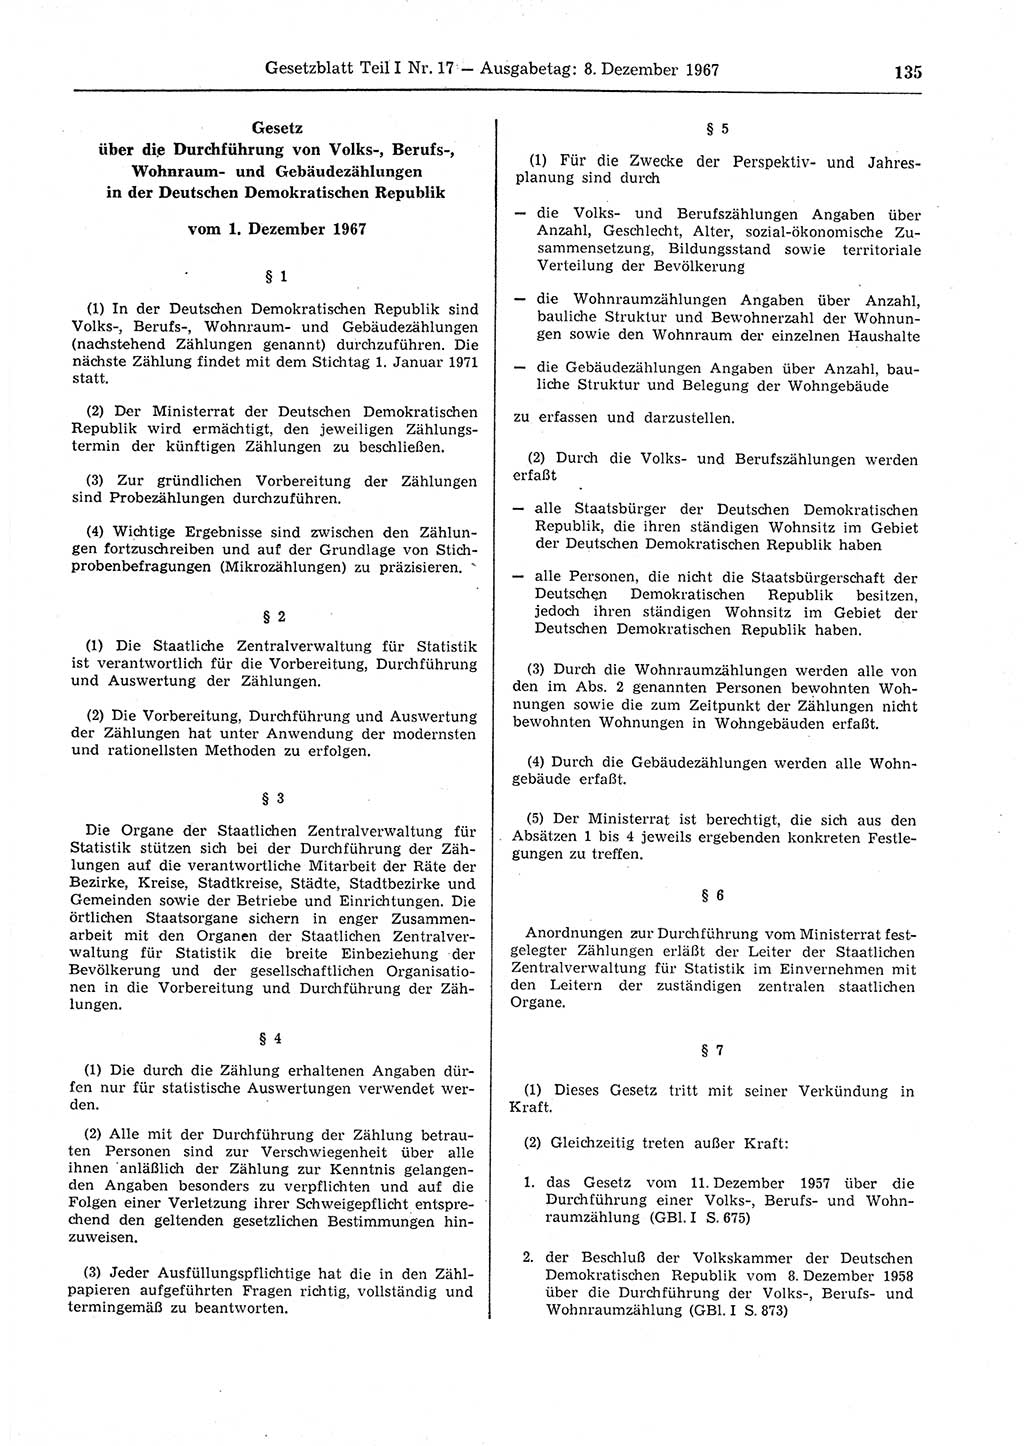 Gesetzblatt (GBl.) der Deutschen Demokratischen Republik (DDR) Teil Ⅰ 1967, Seite 135 (GBl. DDR Ⅰ 1967, S. 135)